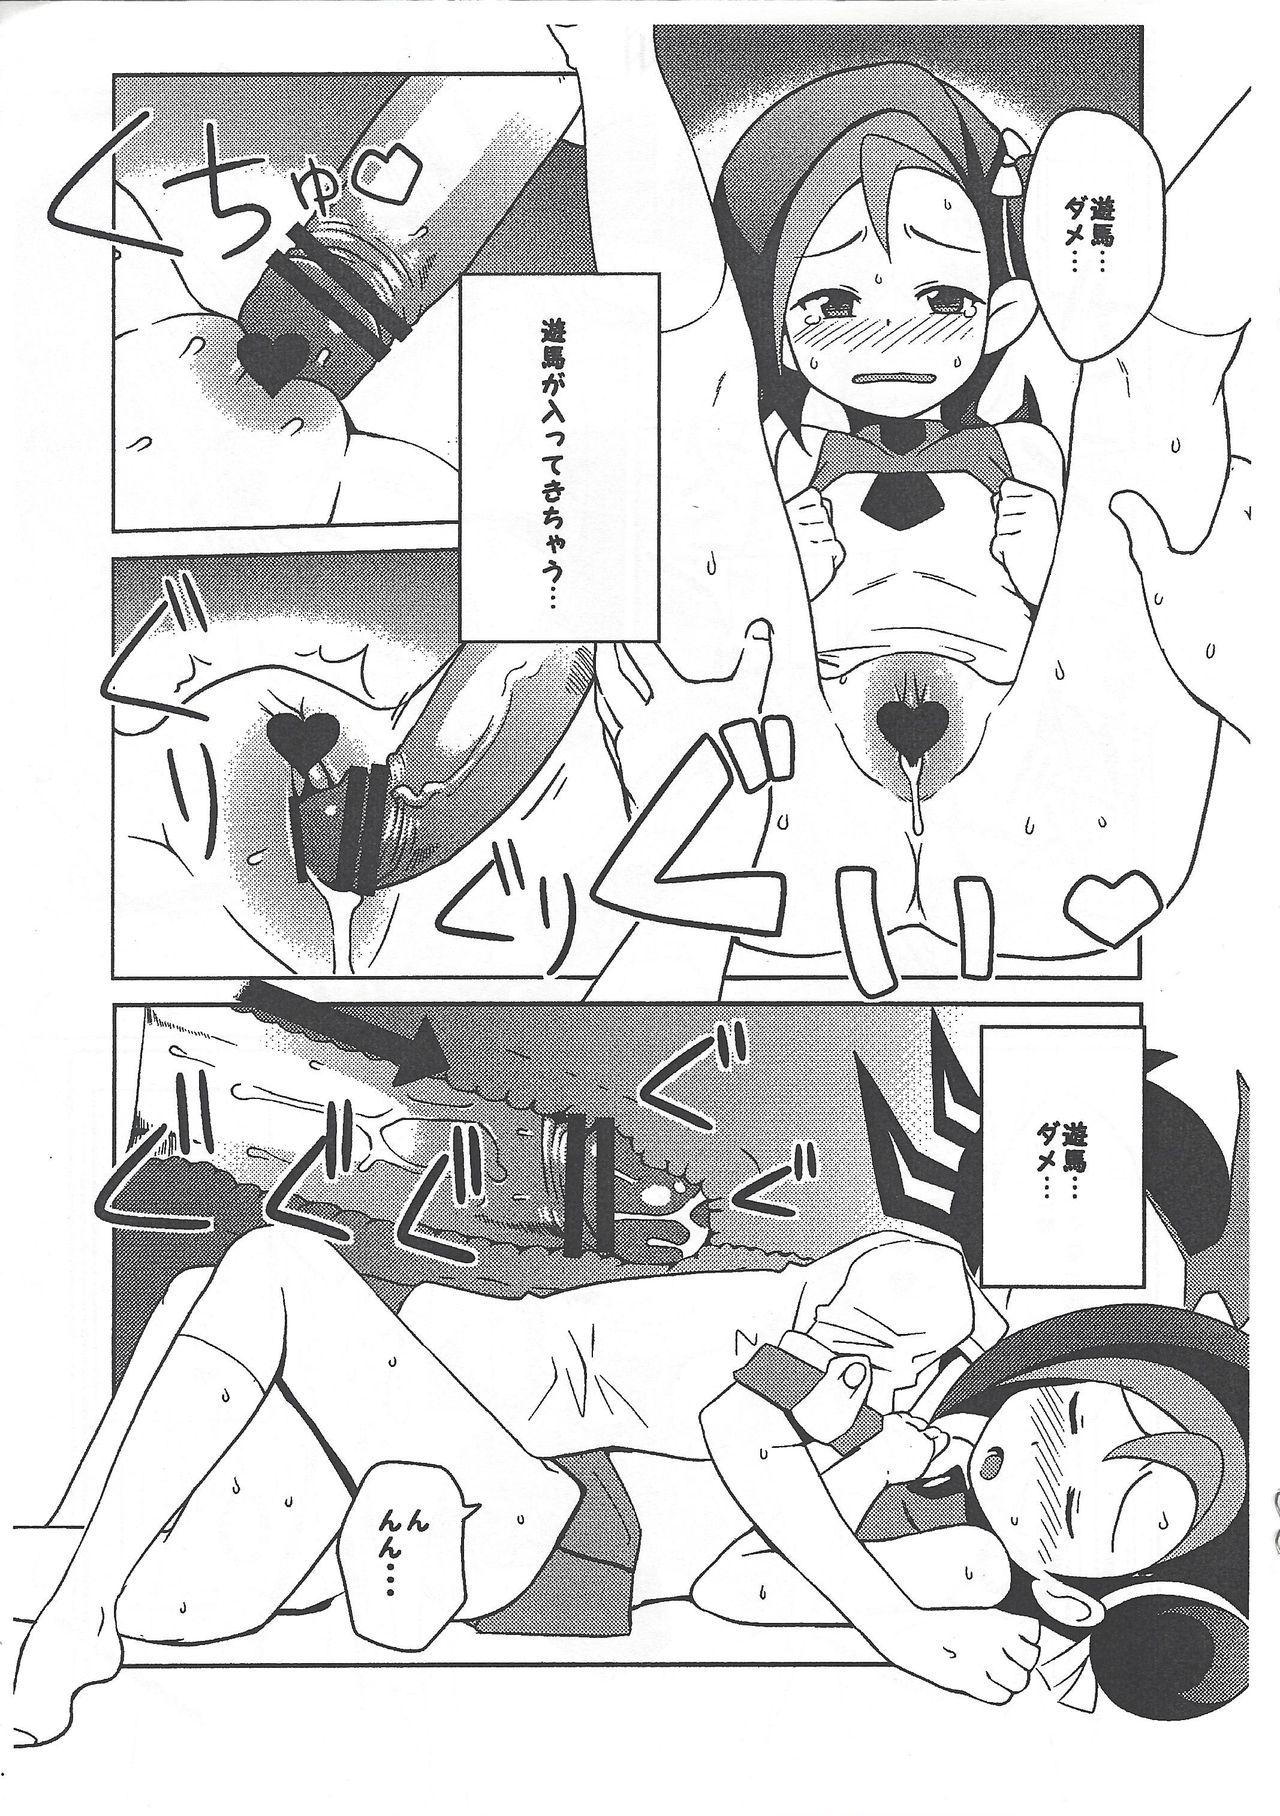 Hung (Puniket 23) [Funi Funi Lab (Tamagoro)] Yu-Gi-Oh ZEXAL Kotori-chan Book (Tentative) (Yu-Gi-Oh! ZEXAL) - Yu-gi-oh zexal Muscular - Page 9